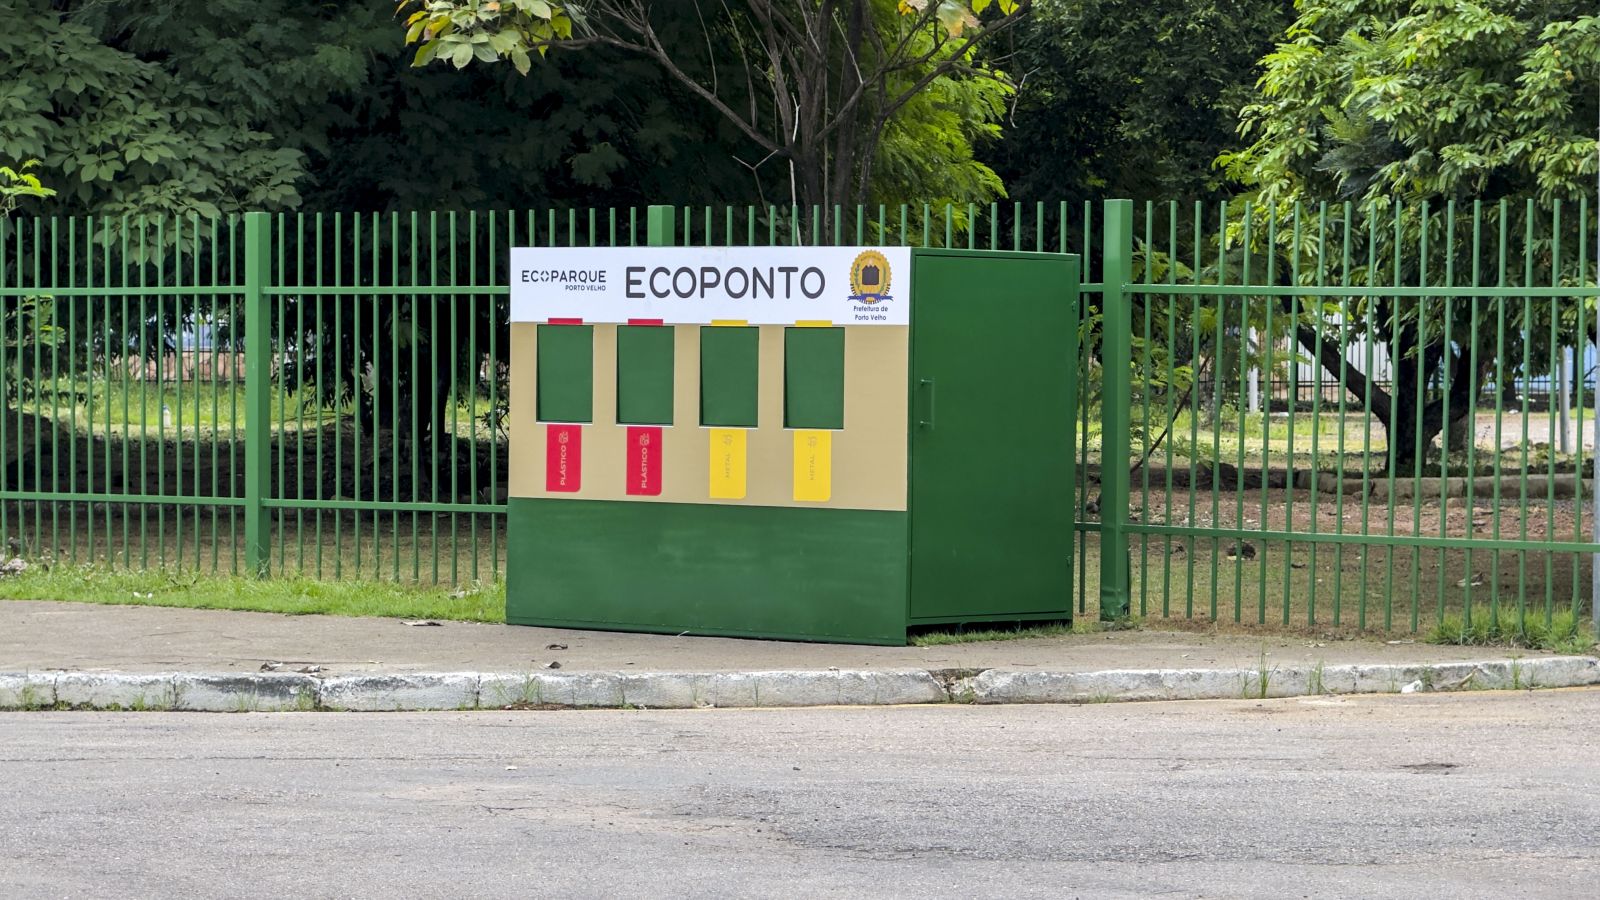 Prefeitura de Porto Velho instala Ecoponto no Parque dos Tanques para orientar o descarte correto dos resíduos sólidos